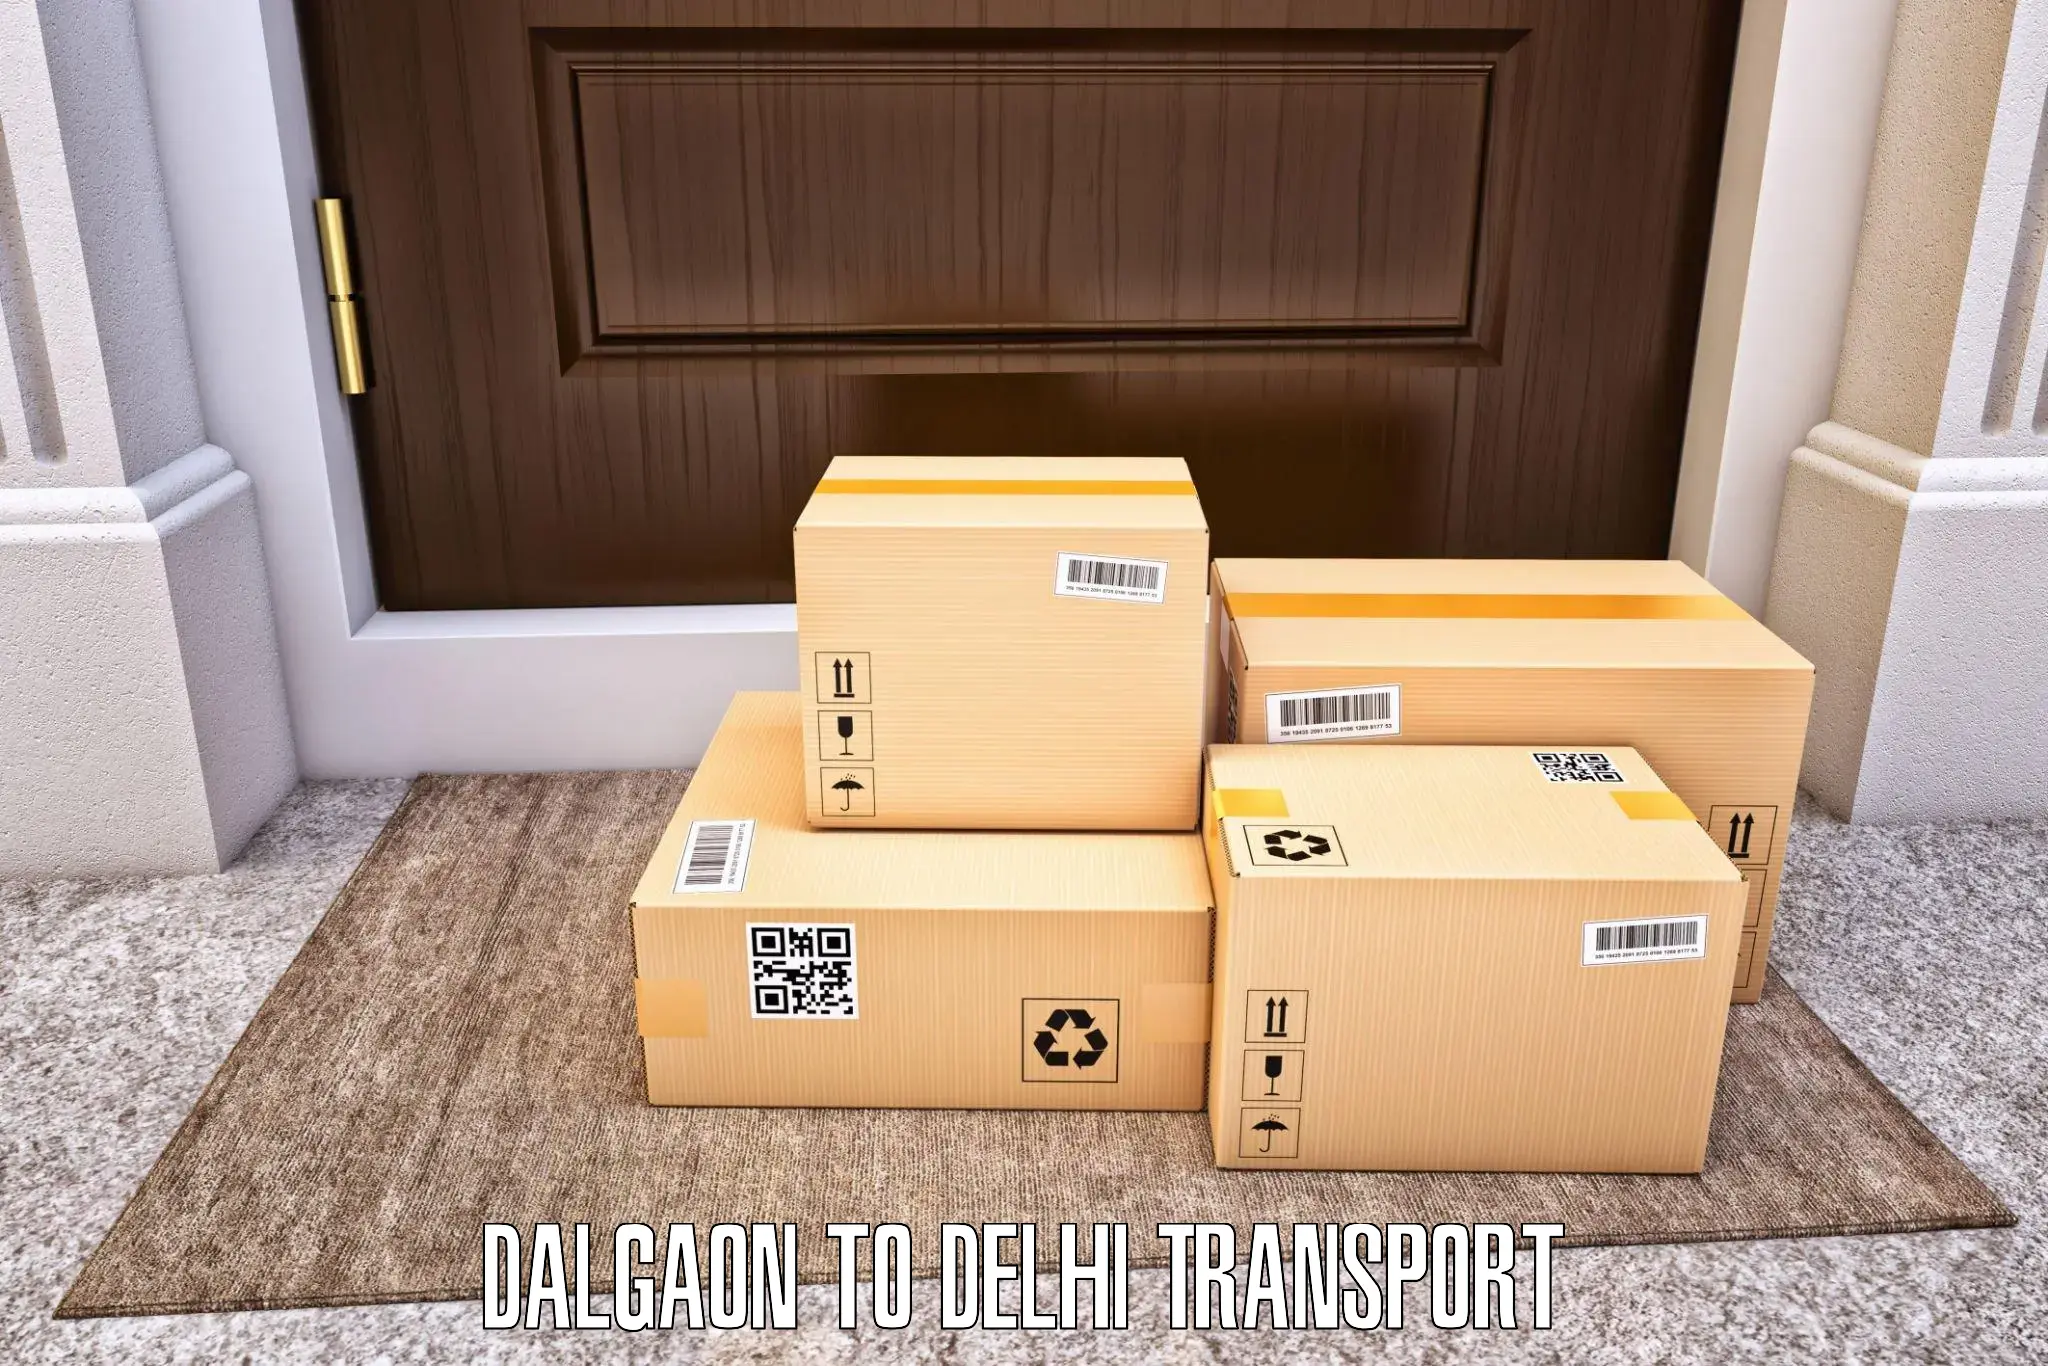 Truck transport companies in India Dalgaon to Krishna Nagar